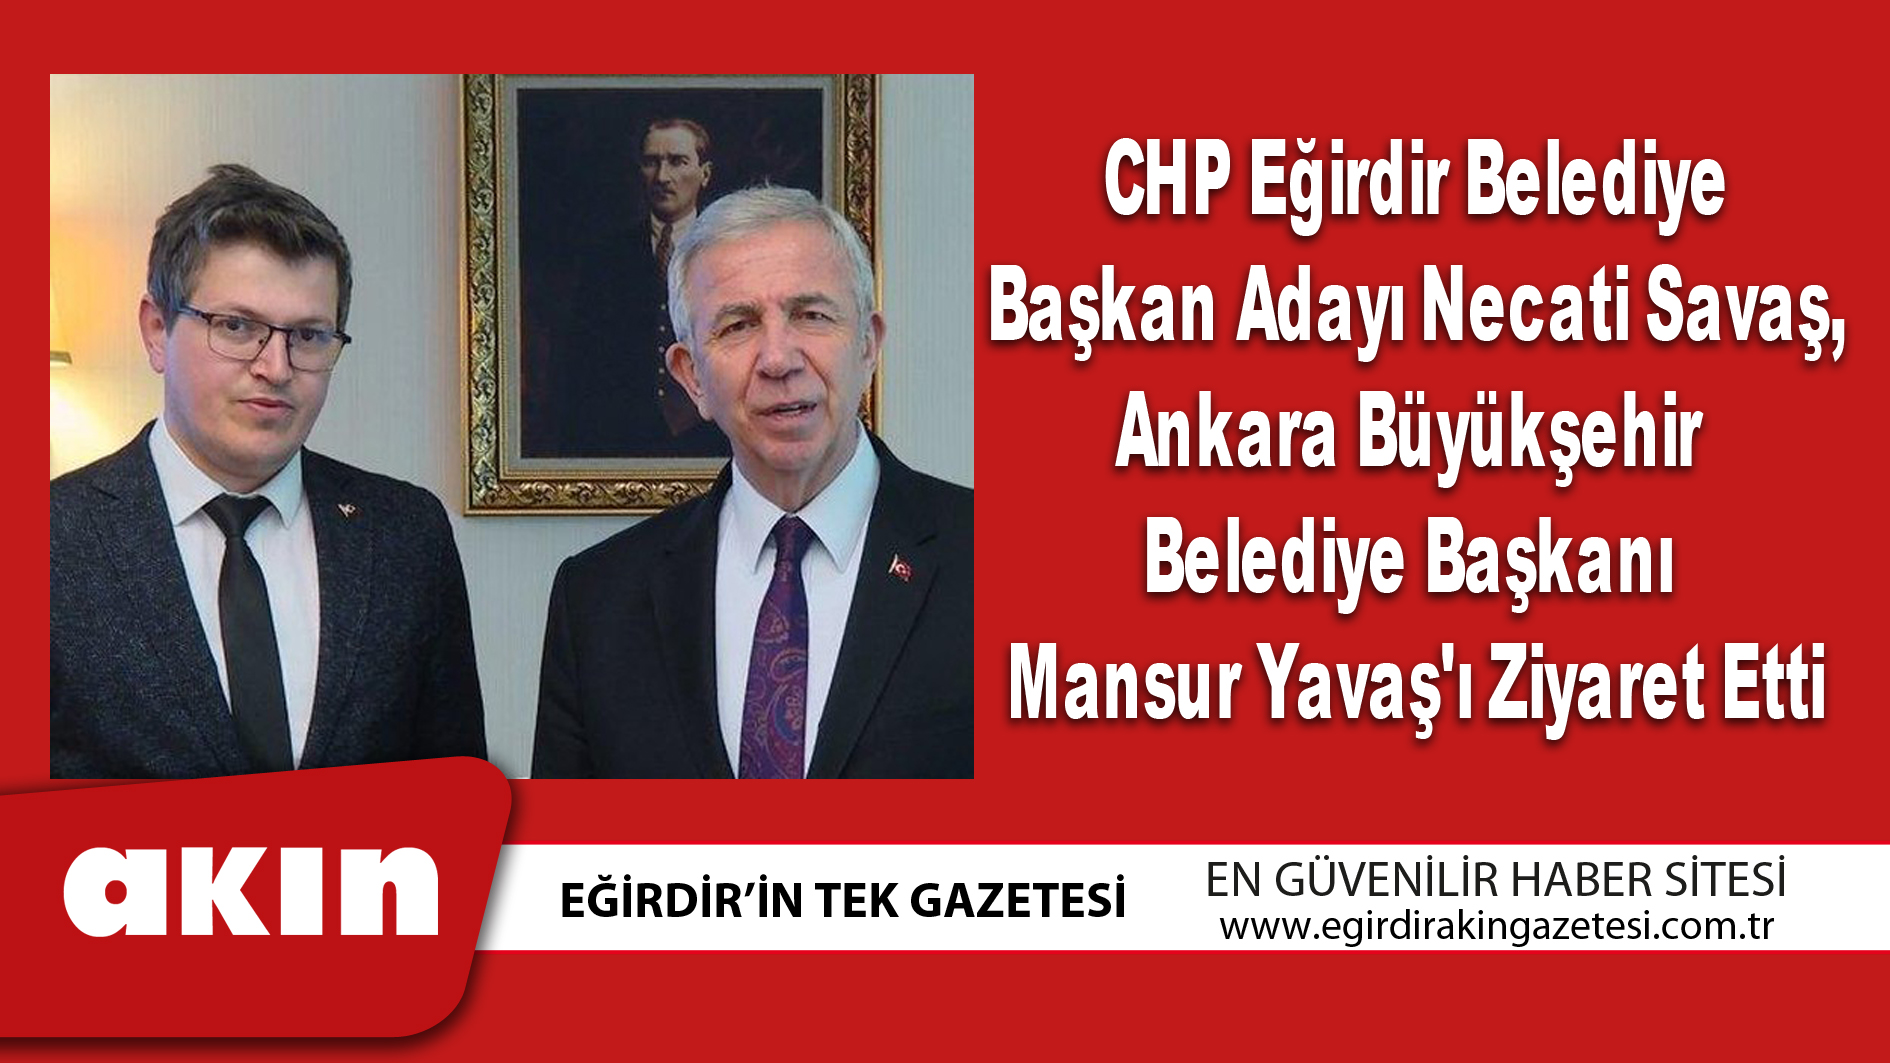 CHP Eğirdir Belediye Başkan Adayı Necati Savaş,  Ankara Büyükşehir Belediye Başkanı Mansur Yavaş'ı Ziyaret Etti